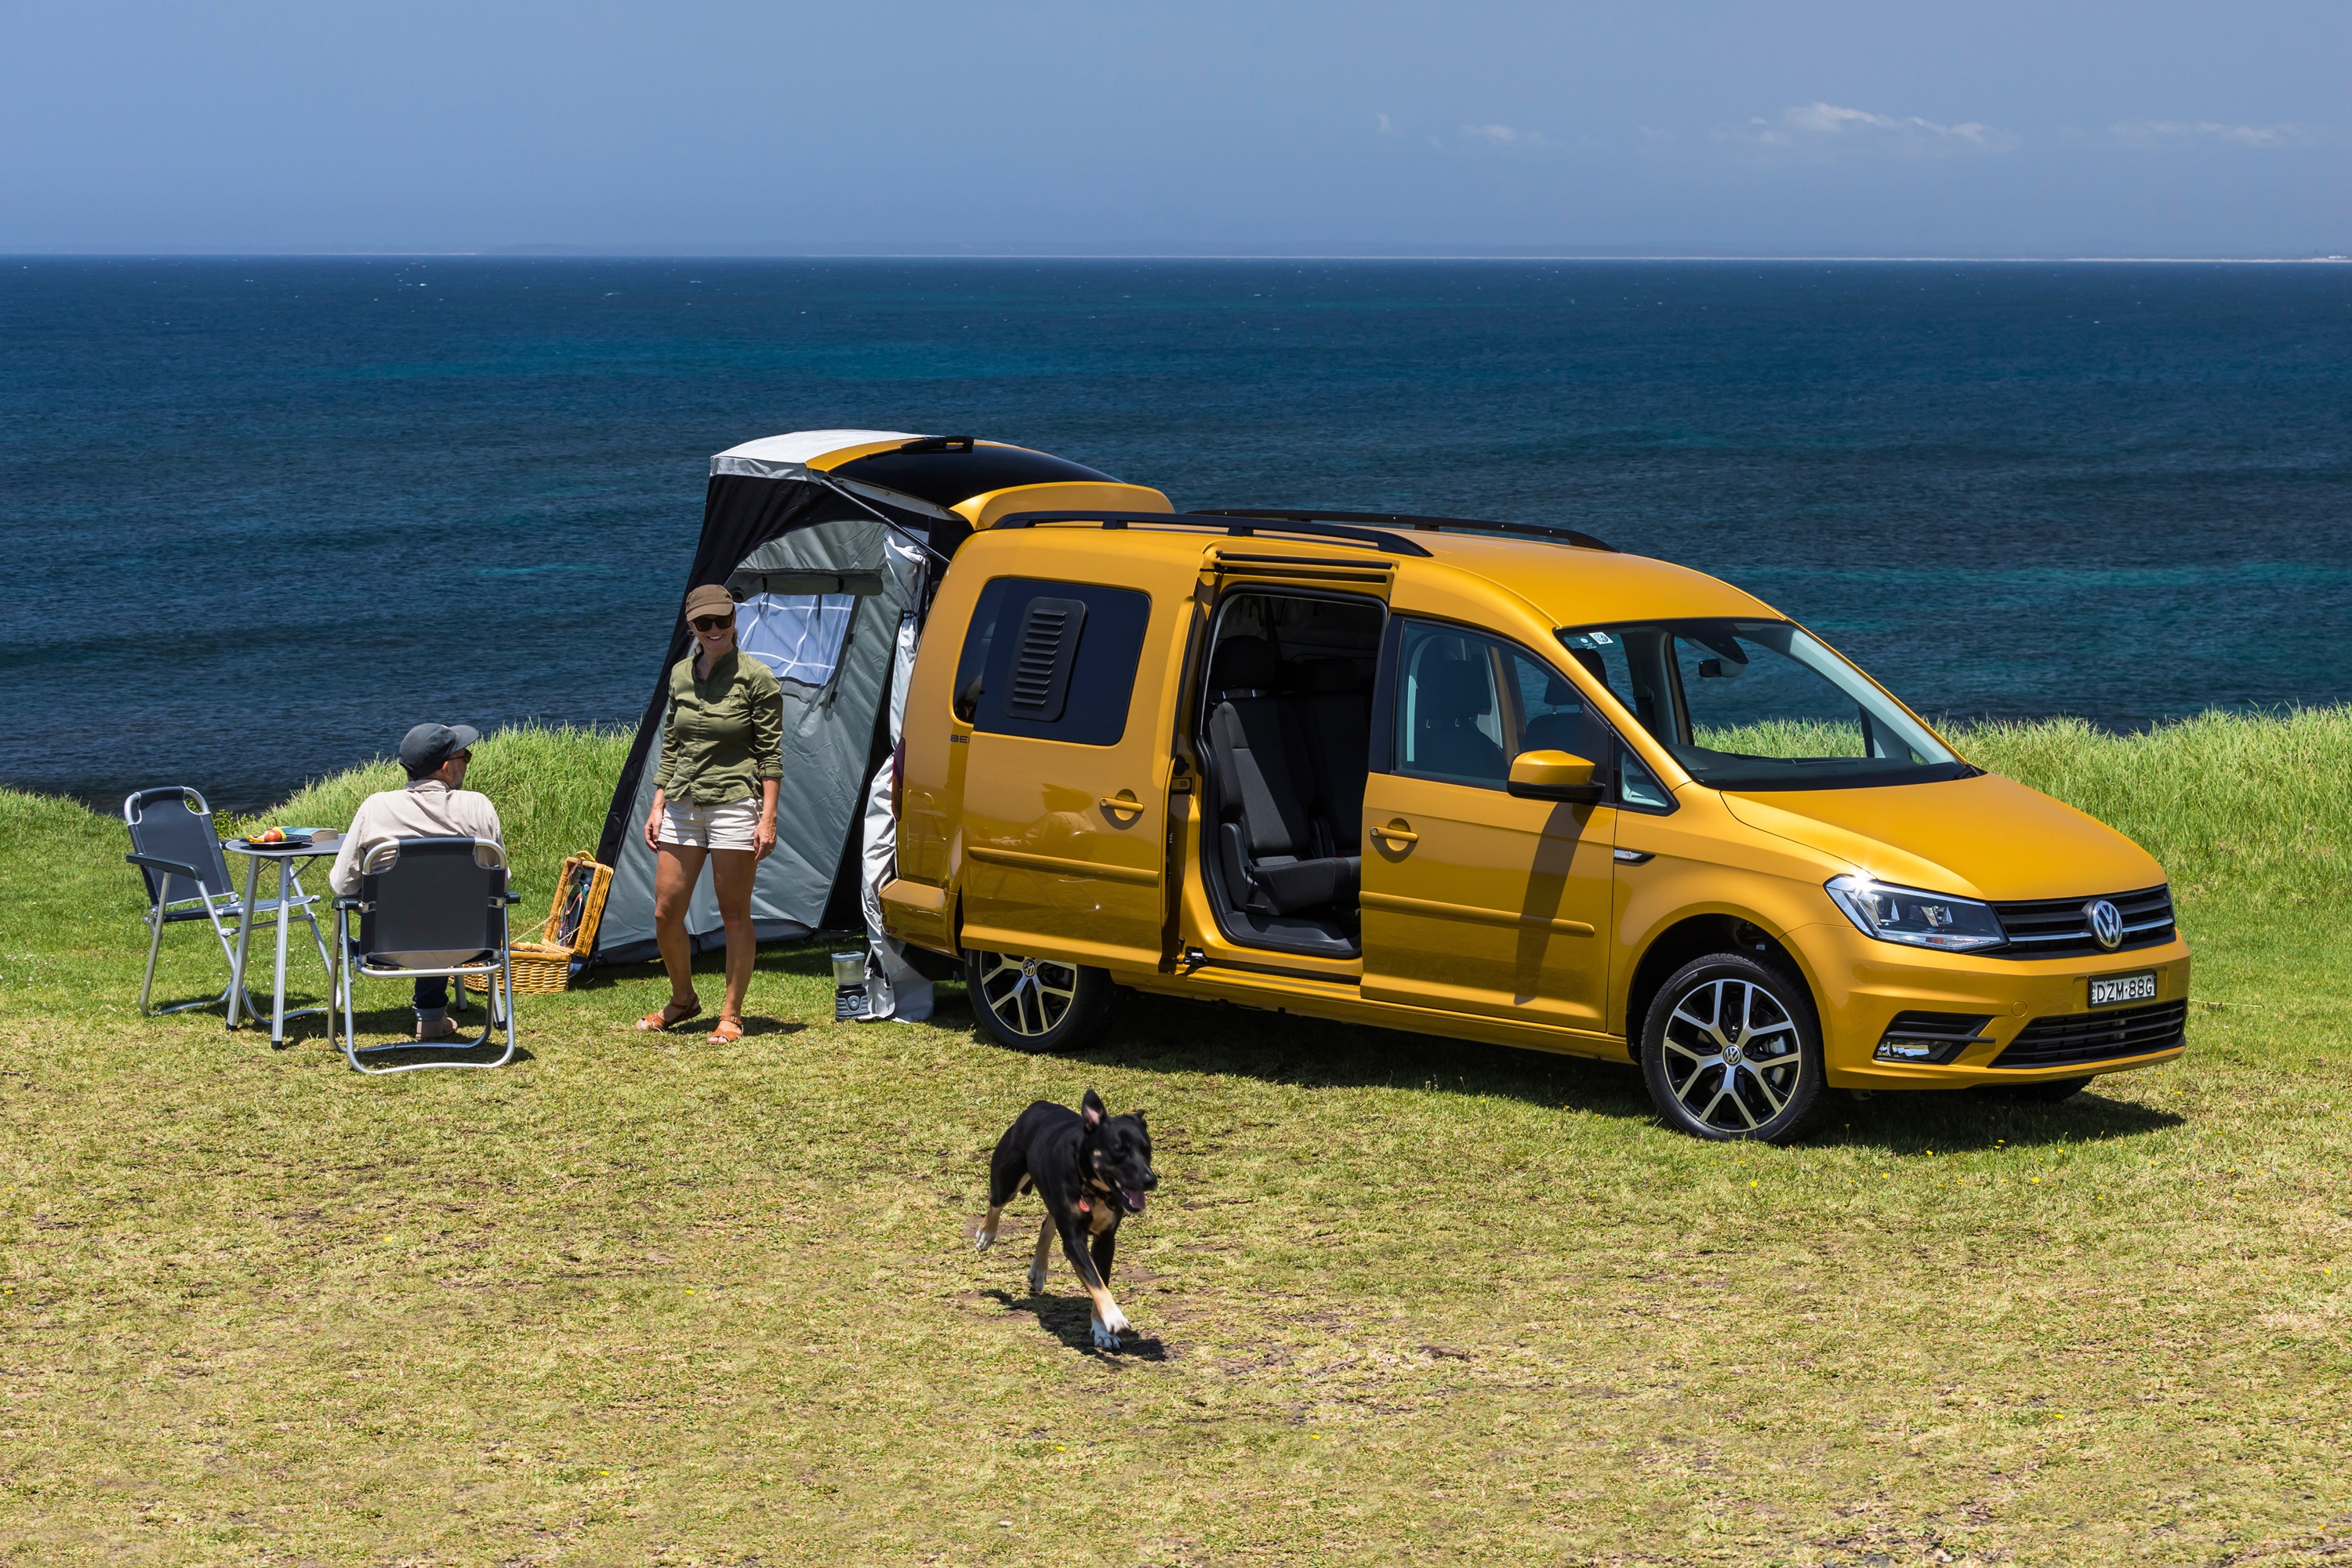 2019 Volkswagen Caddy Beach campervan.